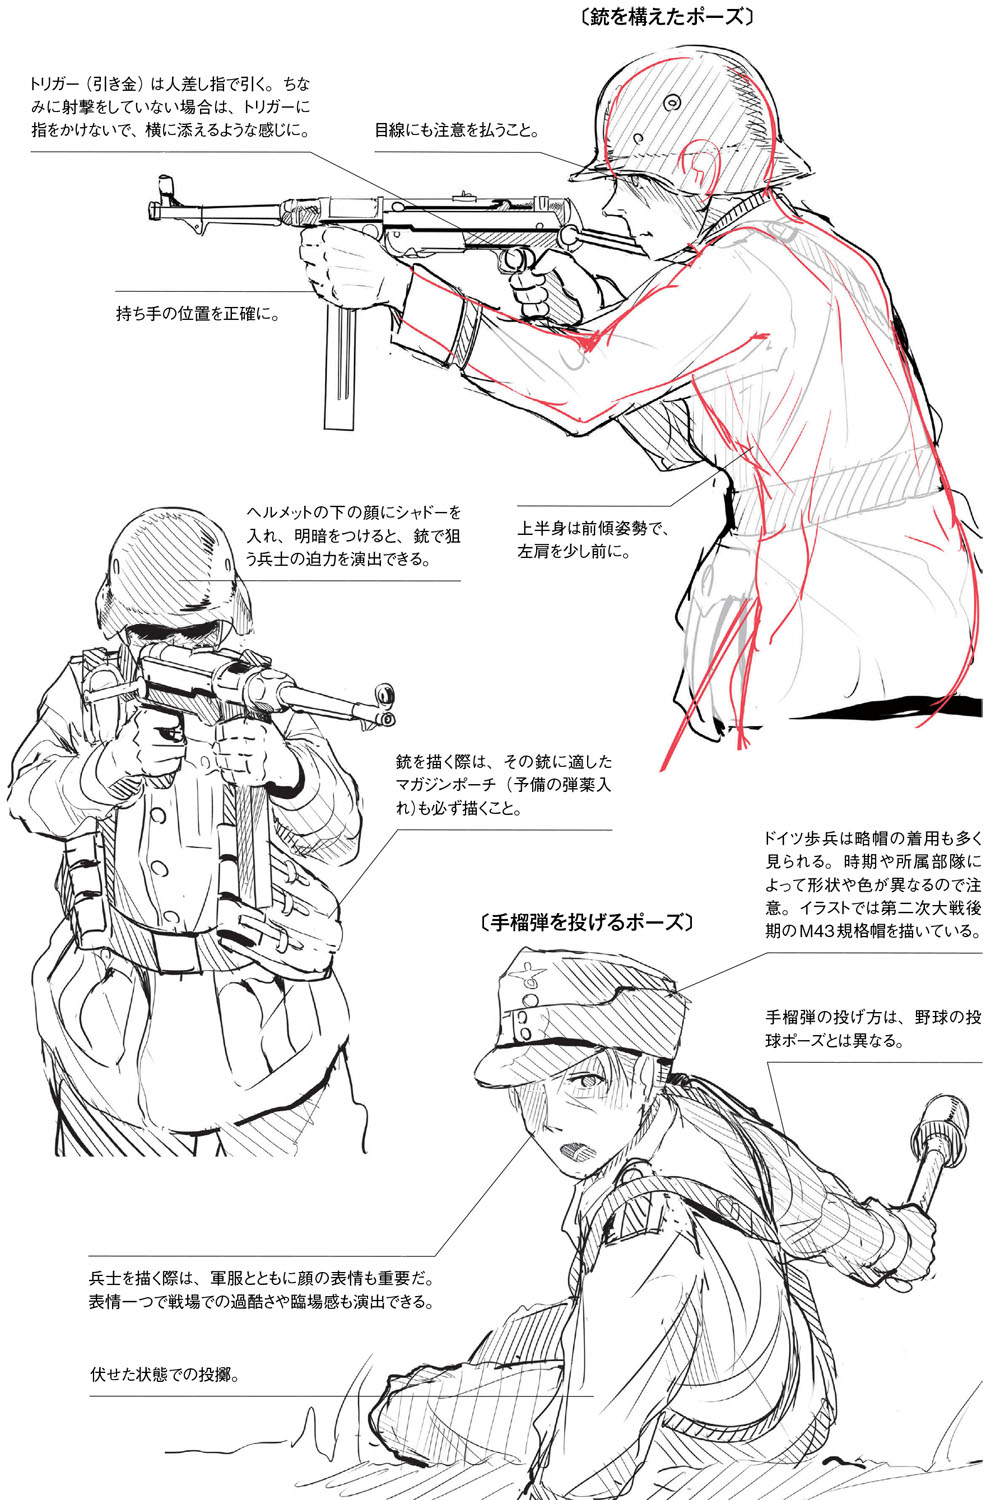 銃の持ち方 構え方は正確に描写しよう 作画のための第二次大戦軍服 軍装資料 第3回 Pictures